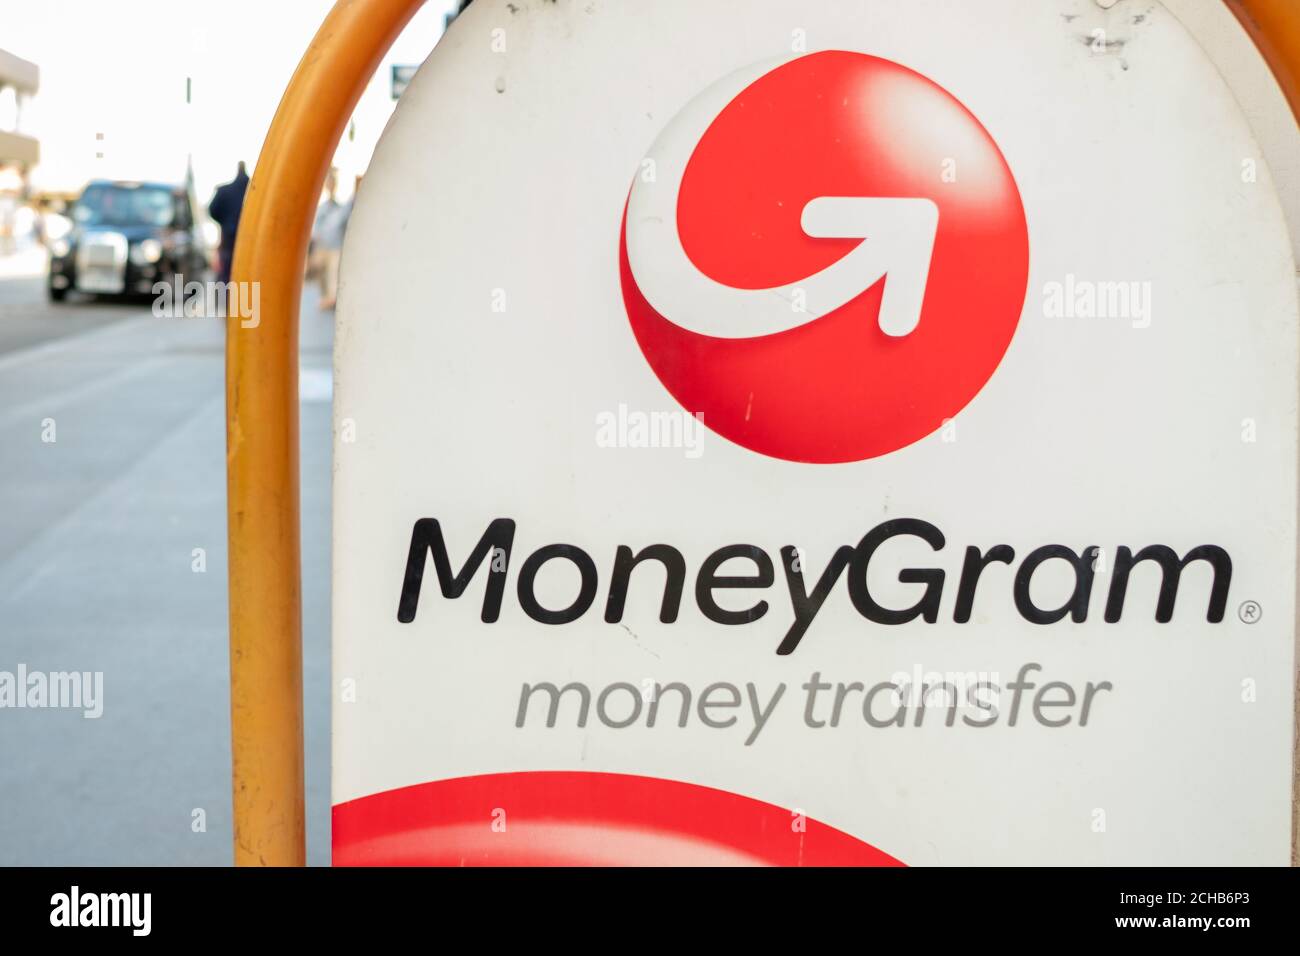 Londra - Settembre 2020: MoneyGram firma su London Street, una società di servizi finanziari specializzata nel trasferimento di denaro Foto Stock